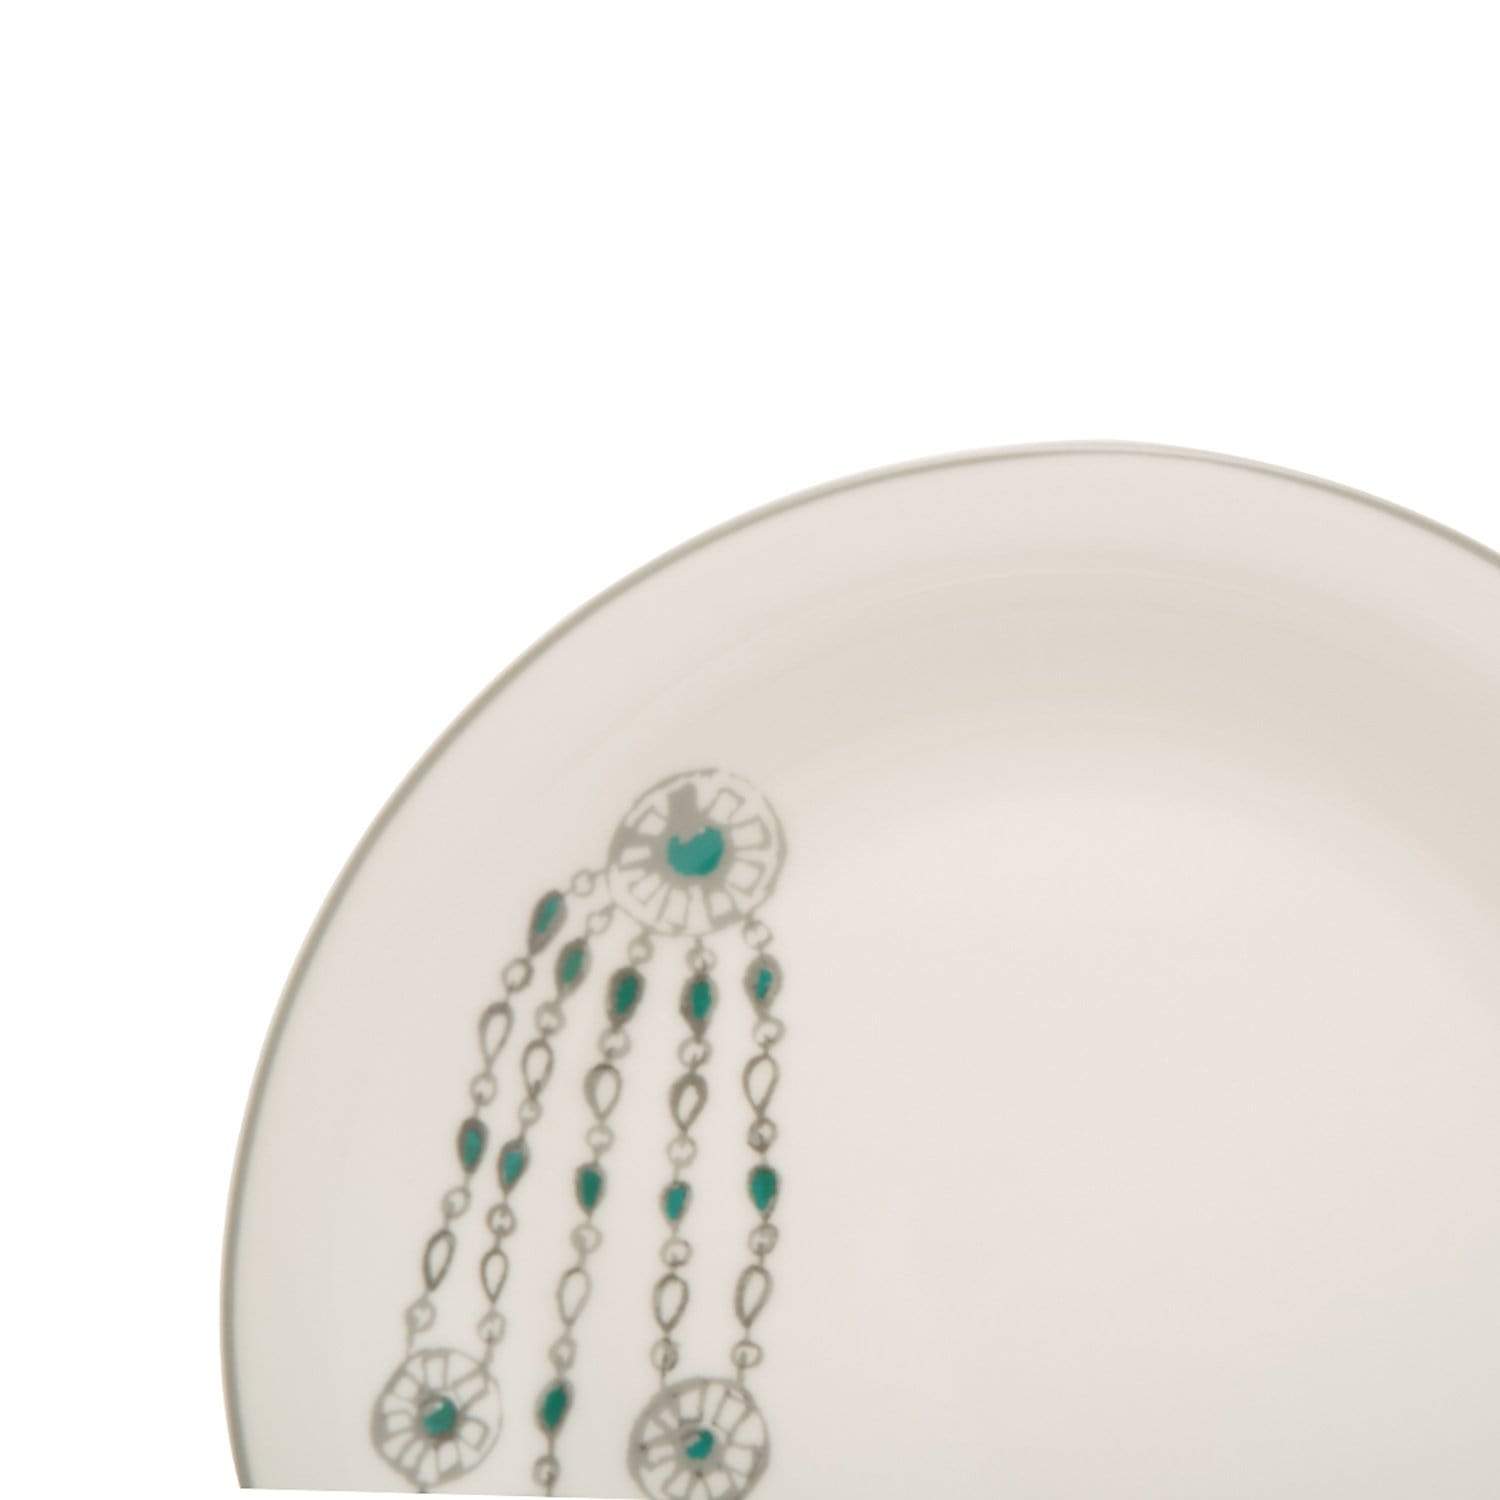 L'atelier FB Emerald Coupe Shape Salad Plate Set - 23 x 23 cm, 6 Pieces - TC 4711 011 - Jashanmal Home